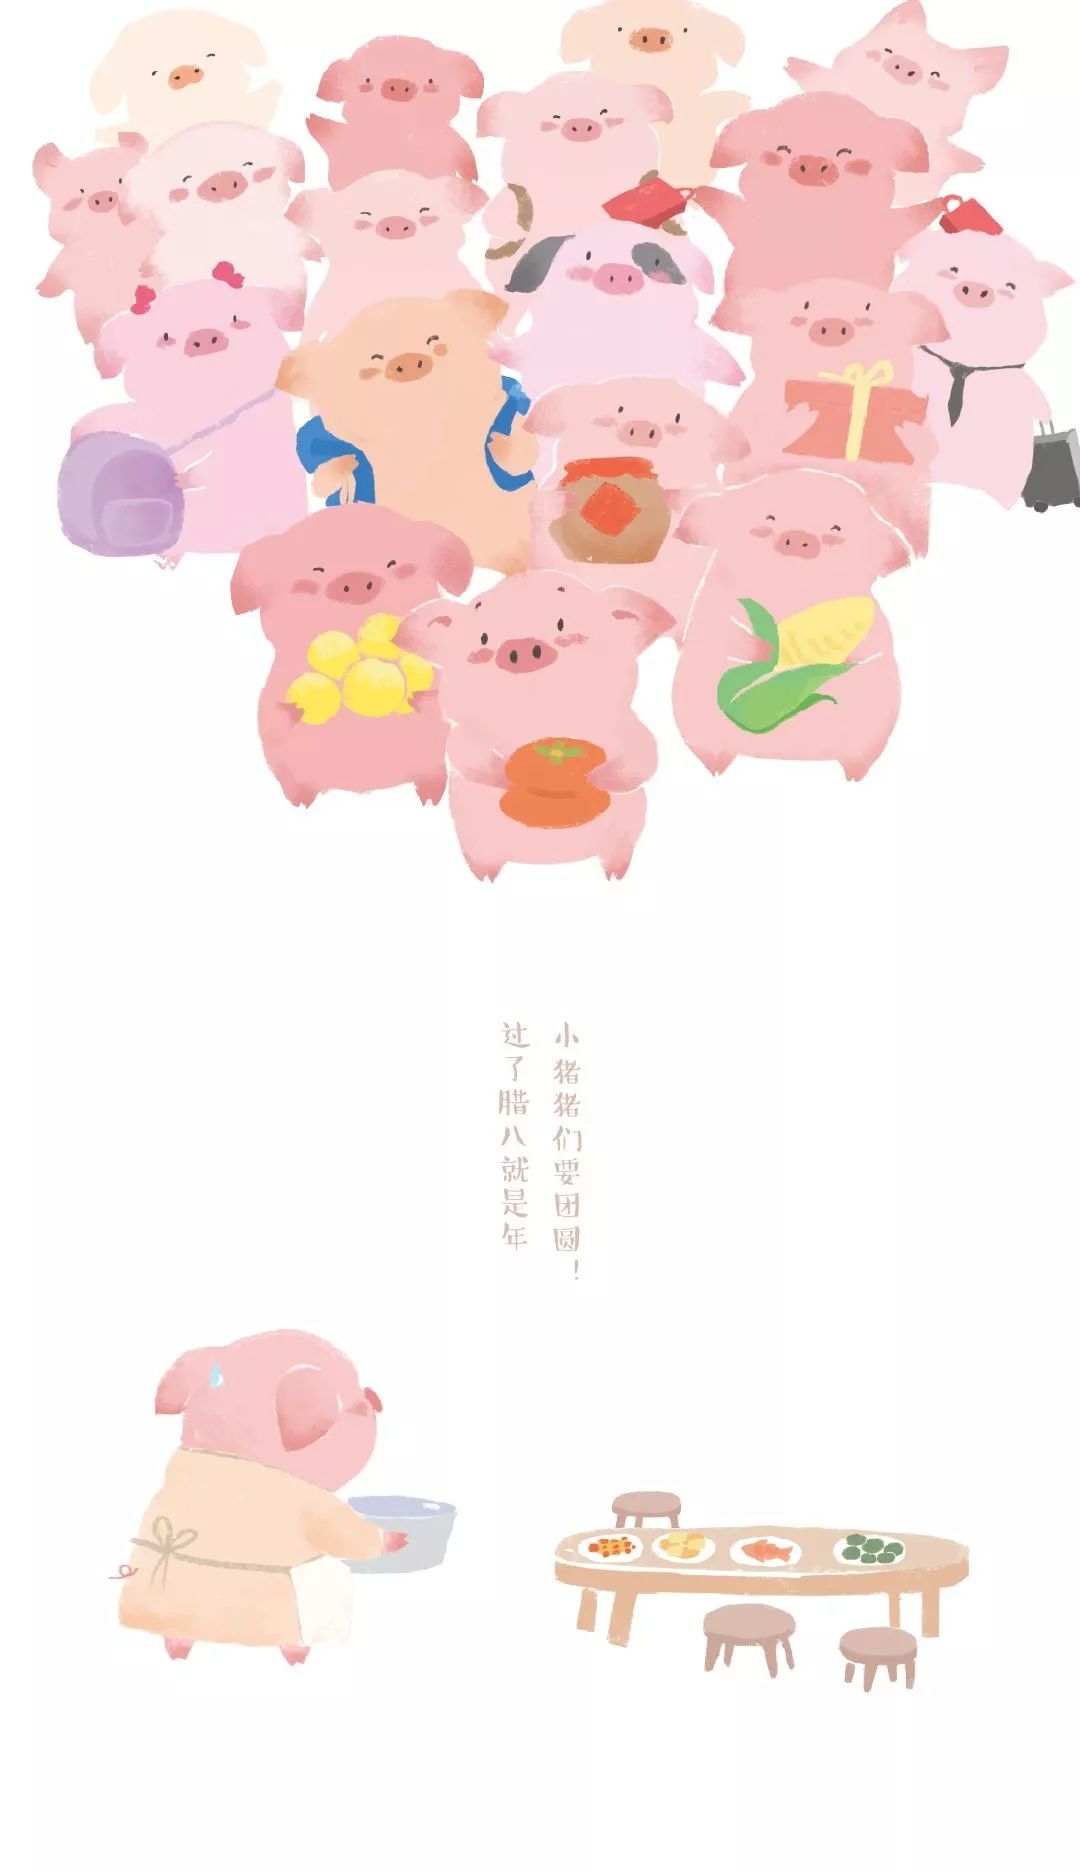 壁纸 | 2019年猪猪壁纸来啦,请查收!